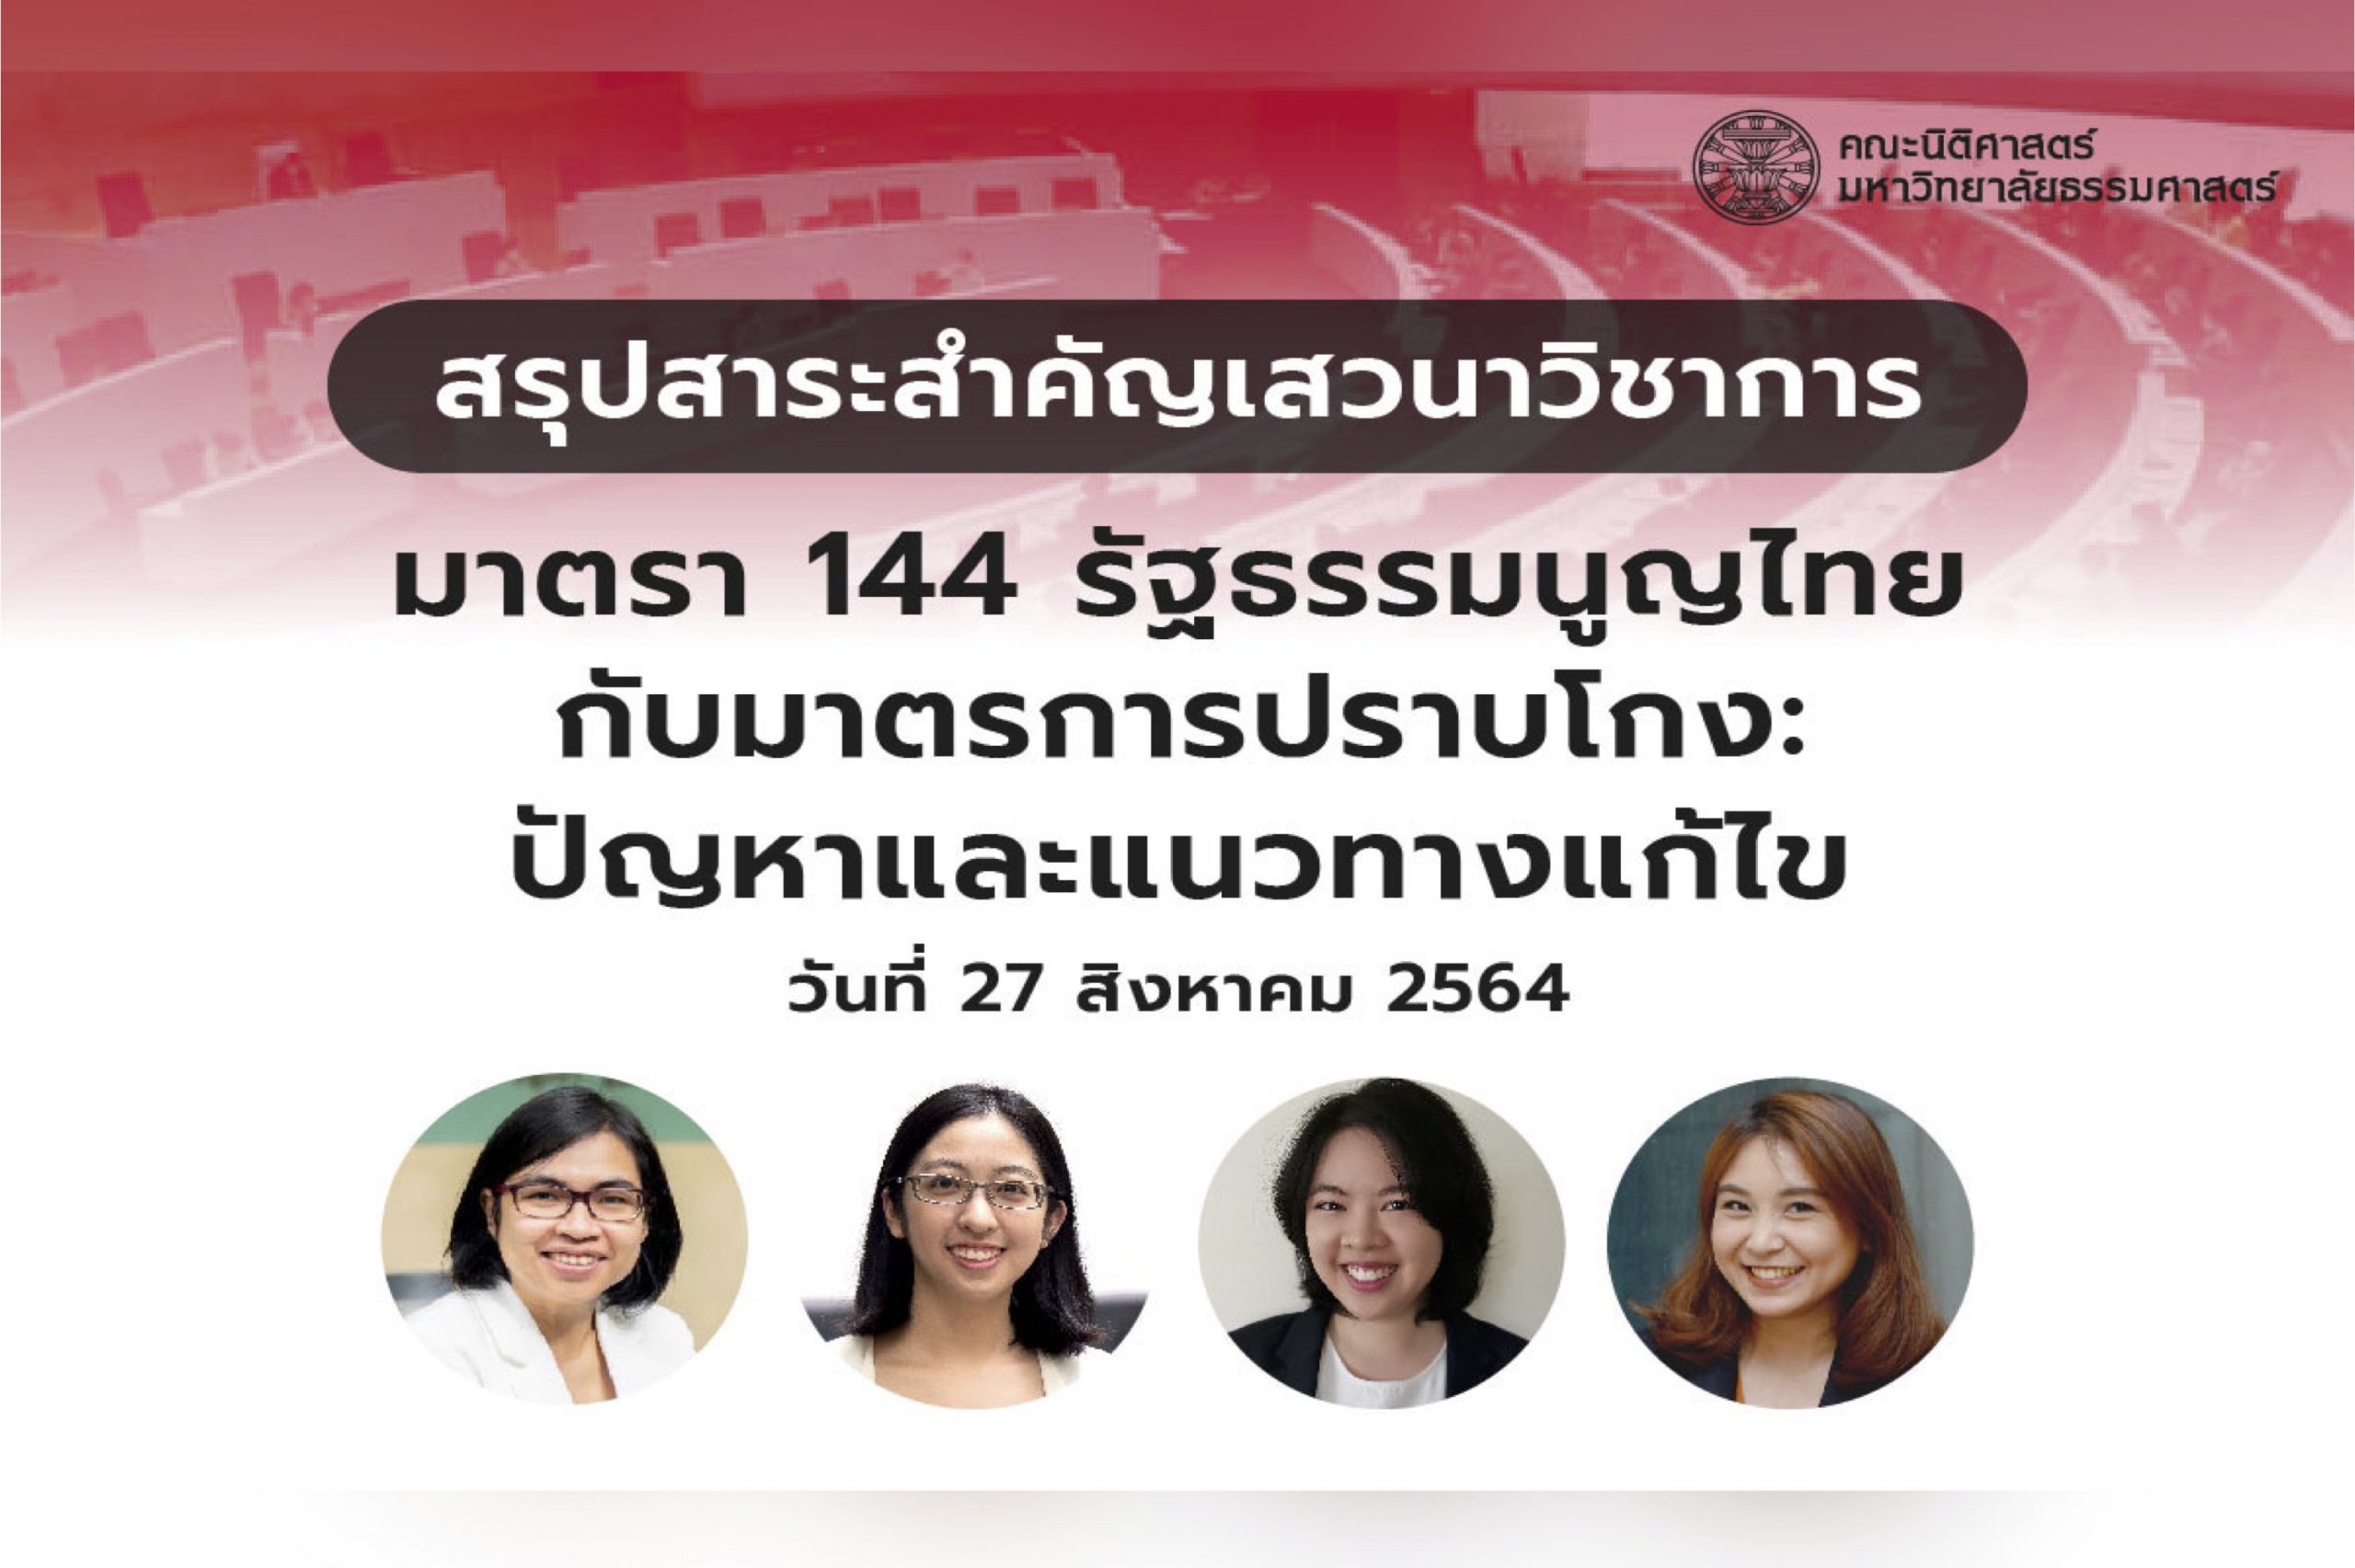 สรุปสาระสำคัญจากเสวนาวิชาการ เรื่อง “มาตรา 144 รัฐธรรมนูญไทยกับมาตรการปราบโกง:ปัญหาและแนวทางแก้ไข”